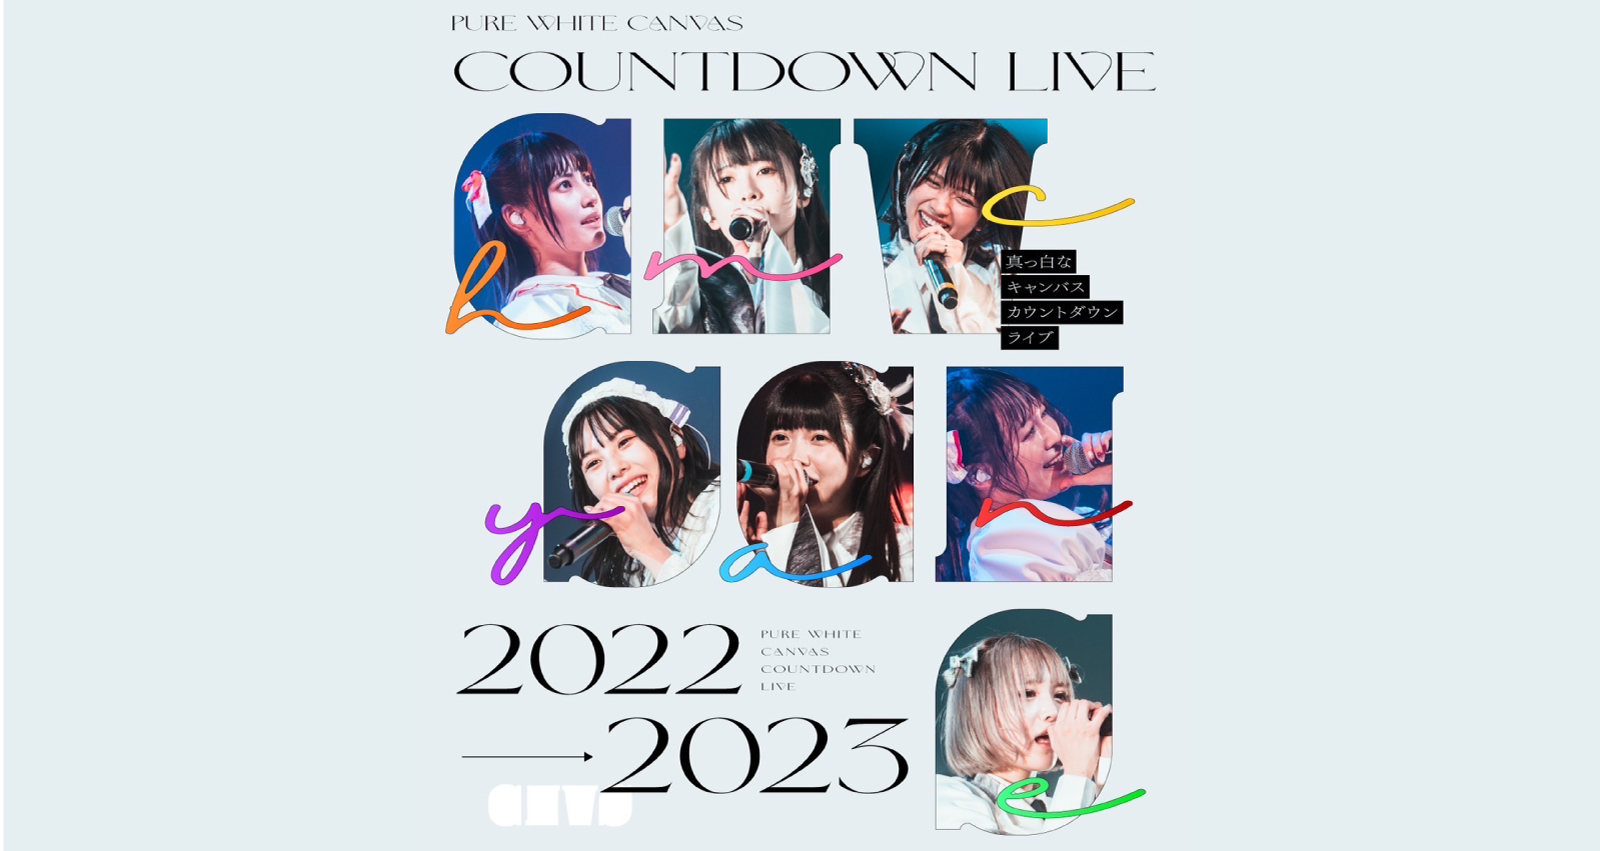 『真っ白なキャンバス カウントダウンライブ2022→2023』